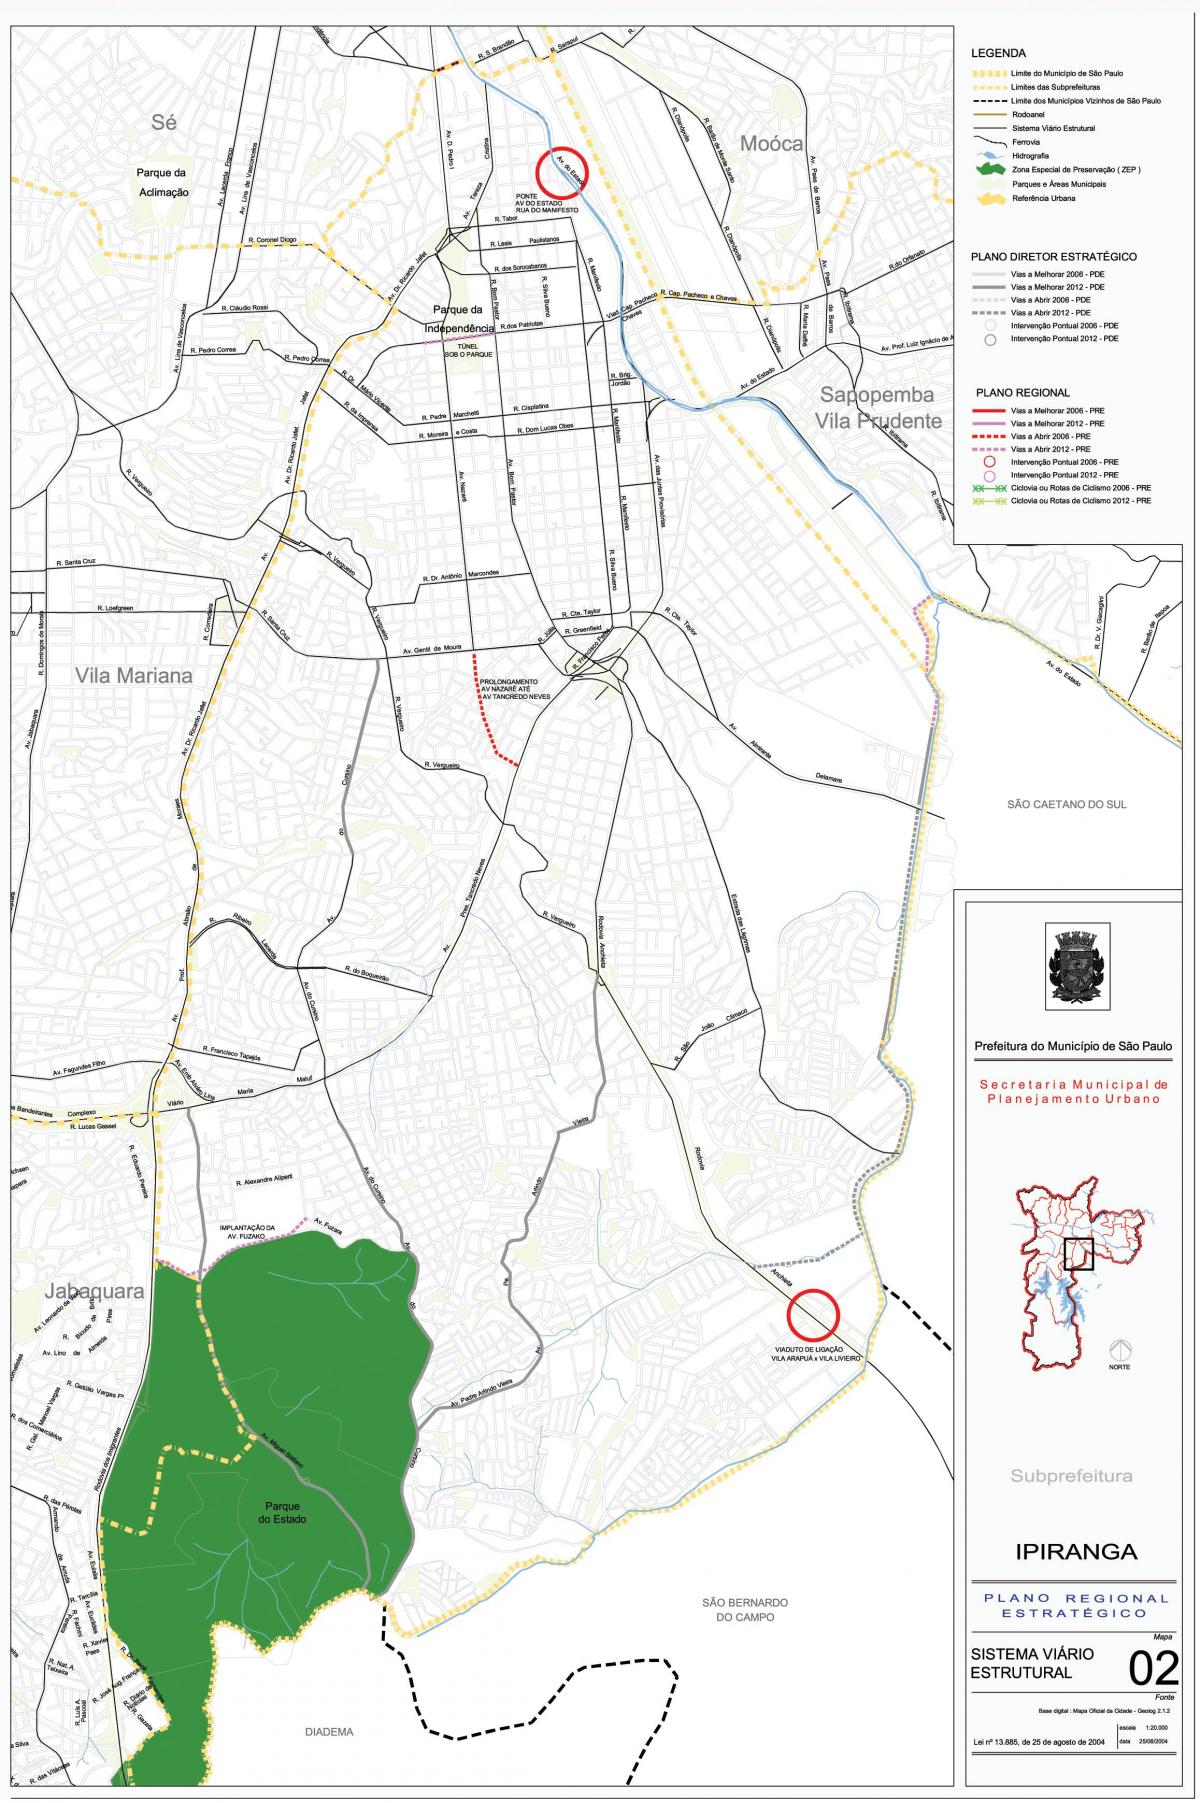 Karte von Ipiranga São Paulo - Straßen